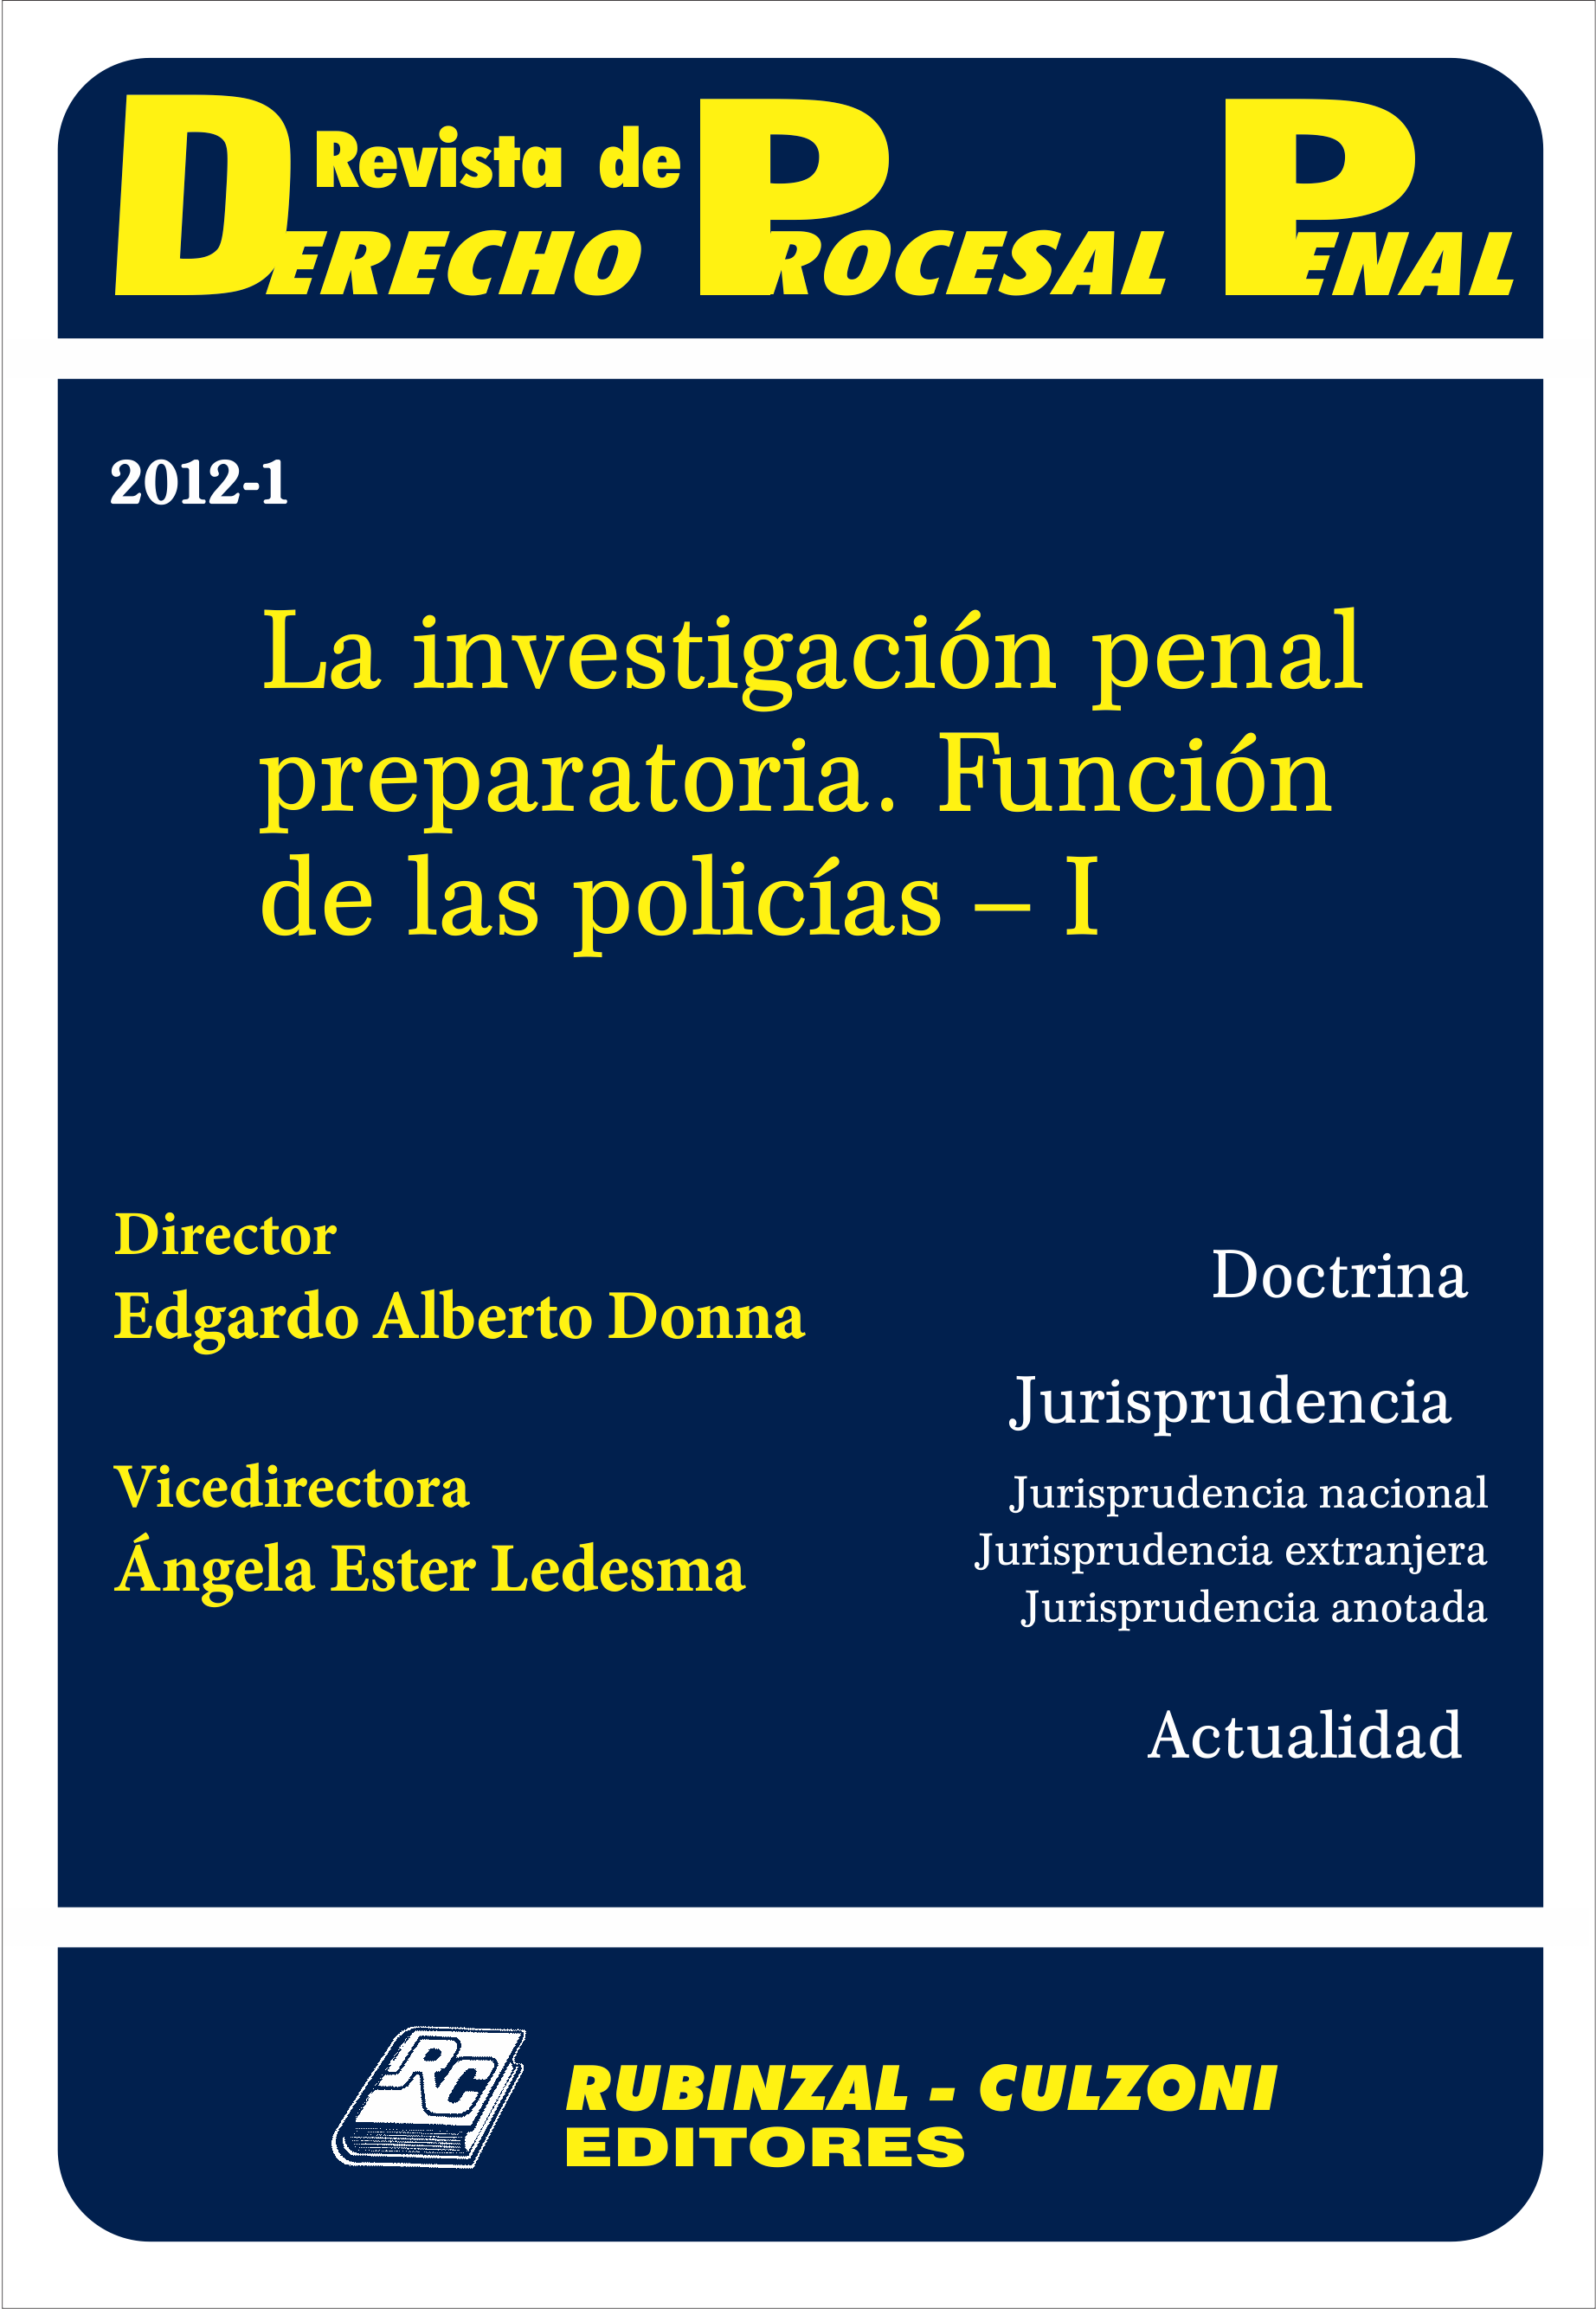 Revista de Derecho Procesal Penal - La investigación penal preparatoria. Función de las policías - I.